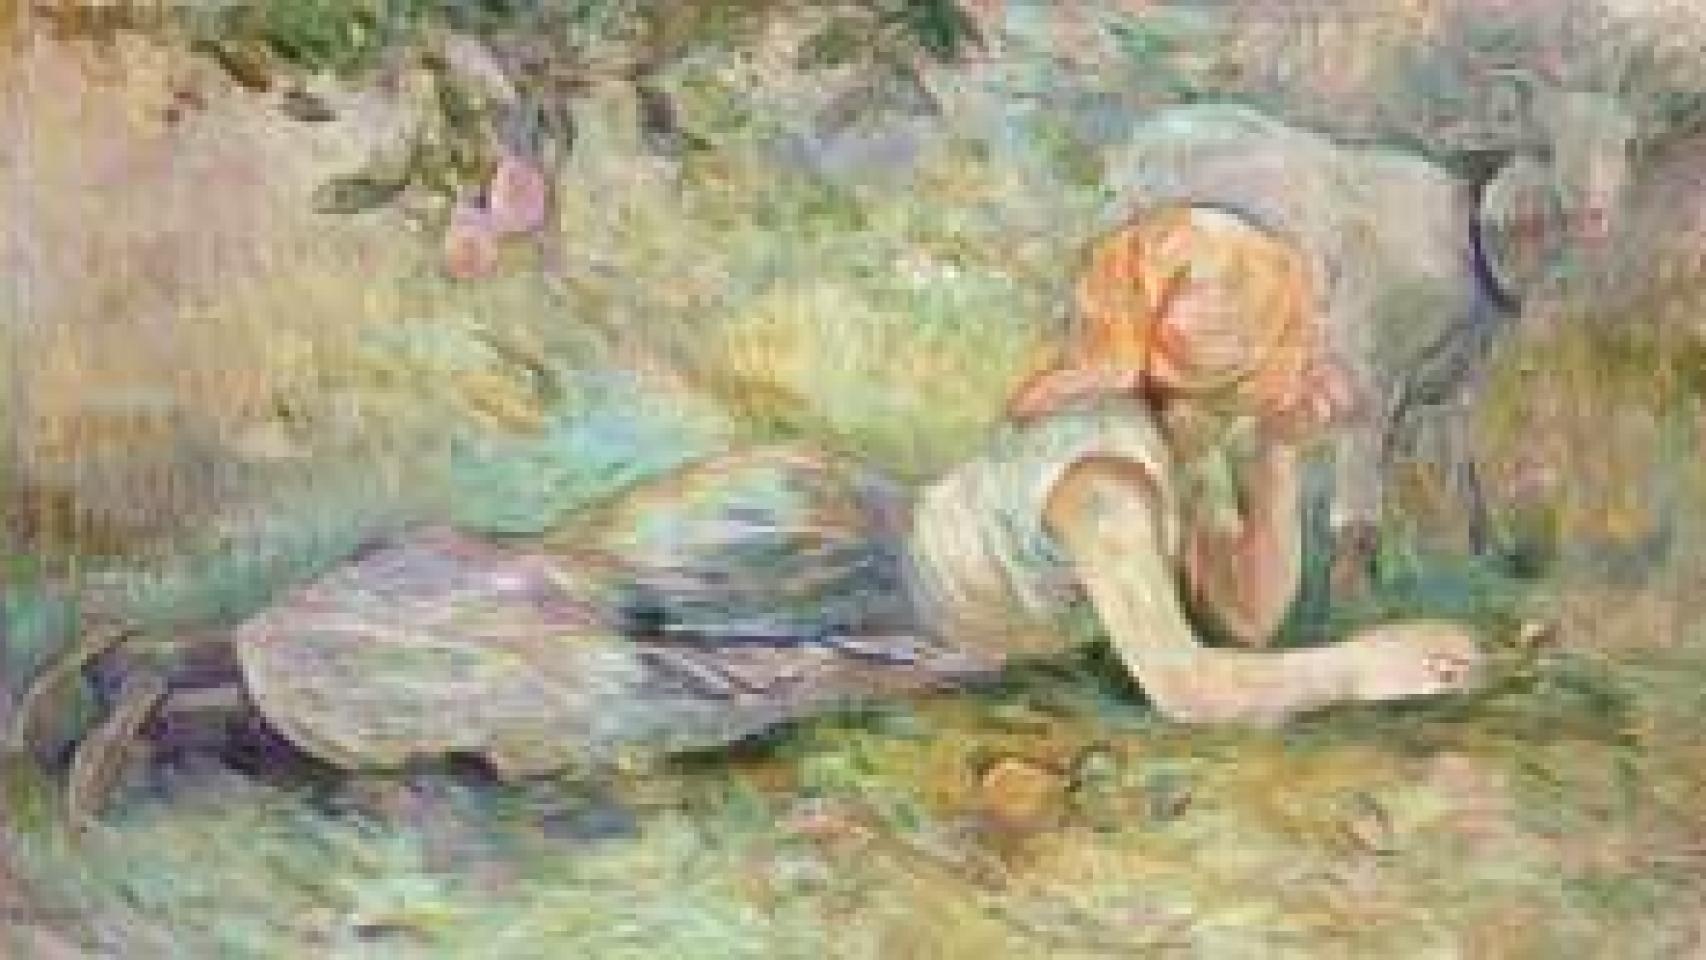 Image: El impresionismo de Berthe Morisot